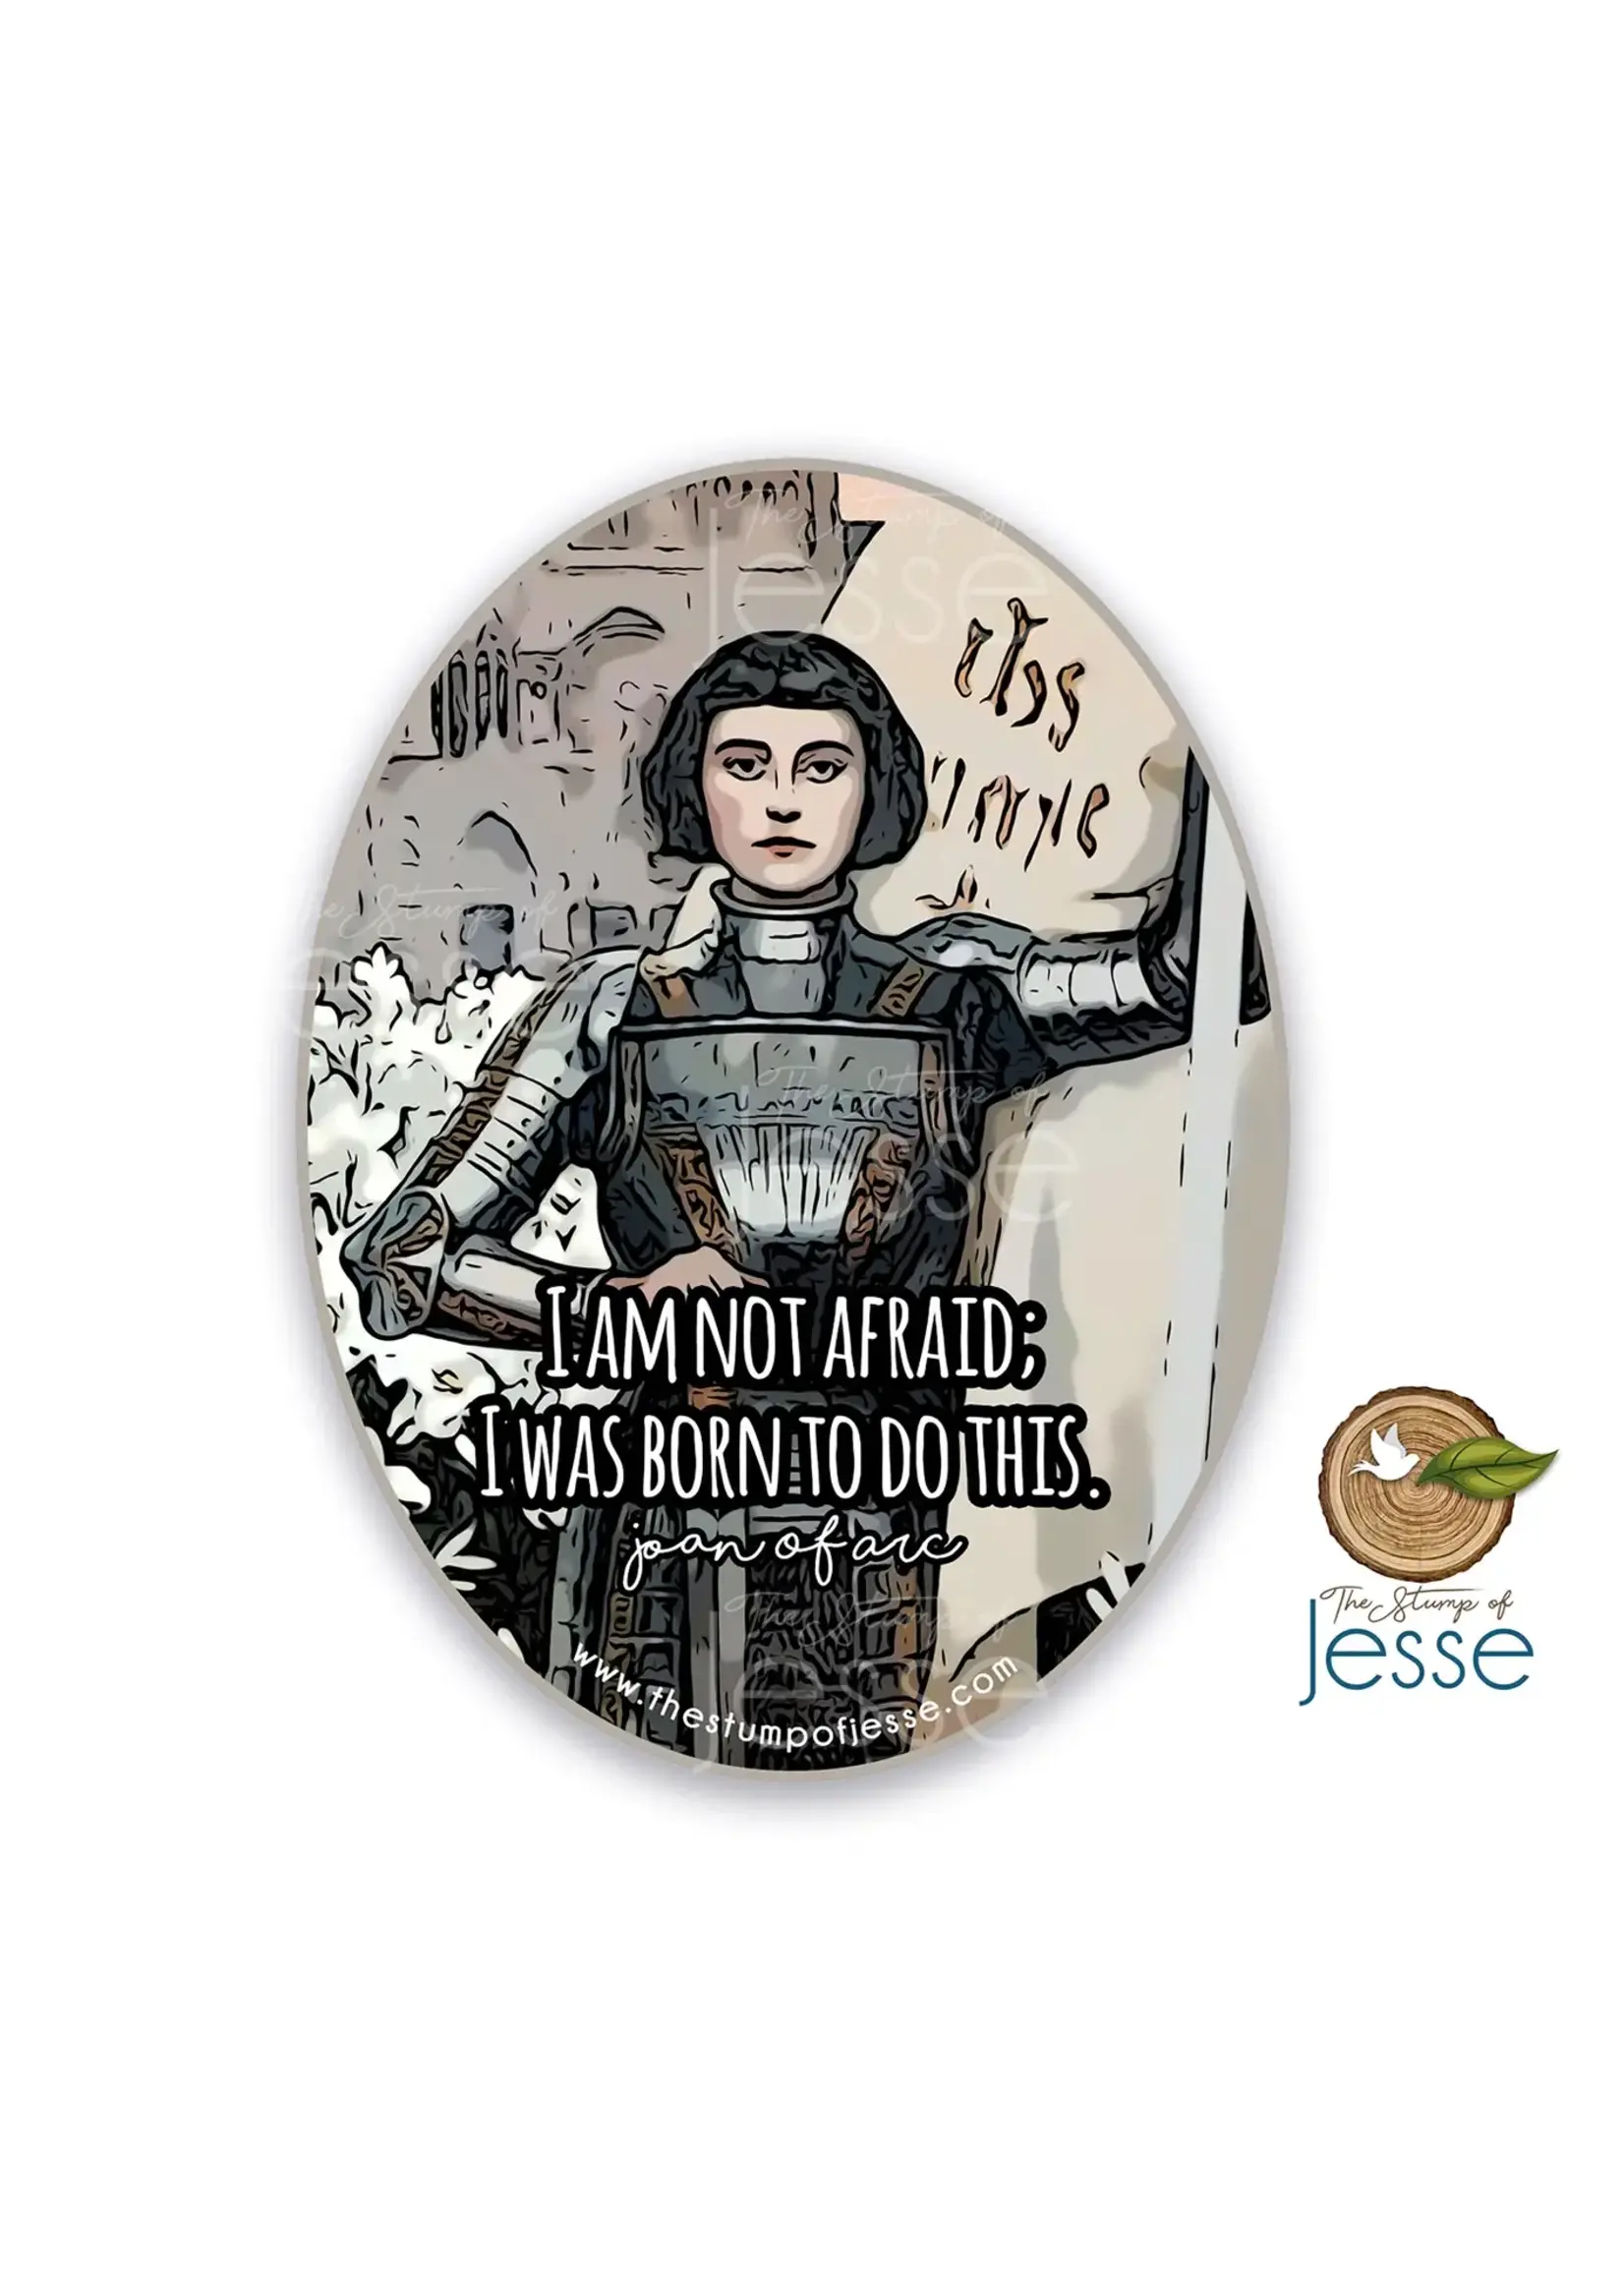 St Joan of Arc Waterproof Sticker